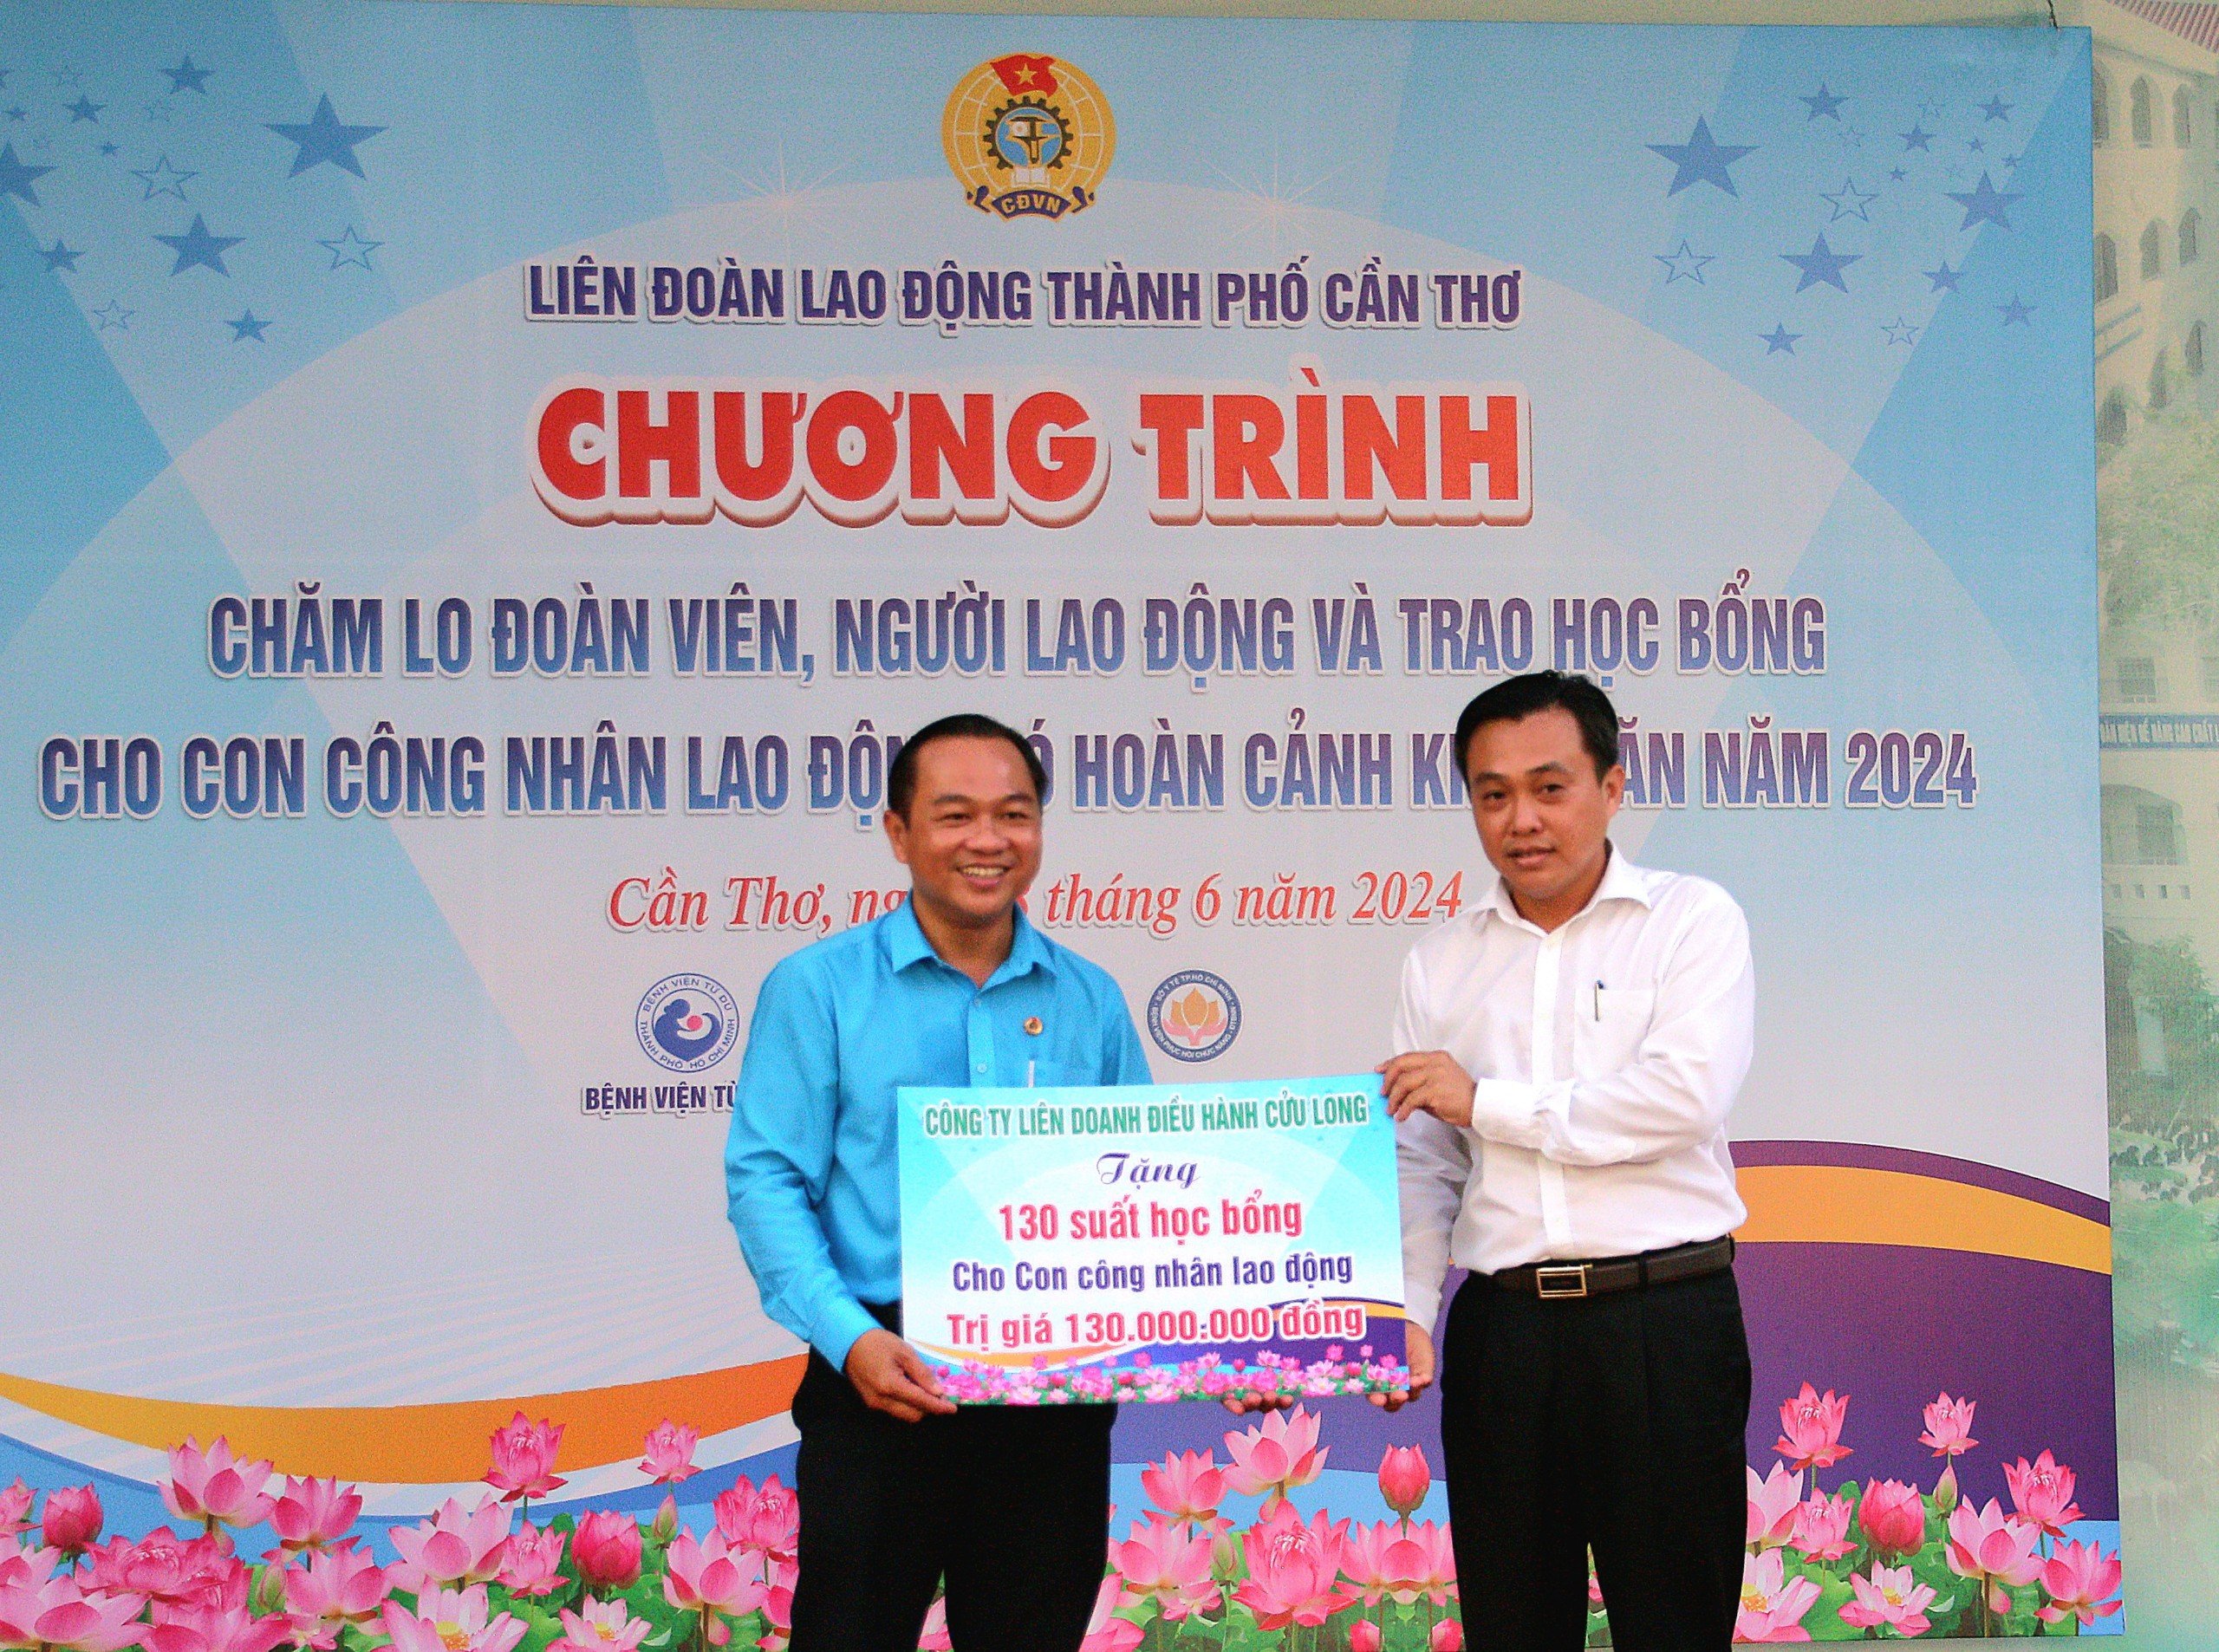 Ông Nguyễn Hồng Hà - Phó trưởng Ban Dân vận Thành ủy Cần Thơ đại diện Công ty liên doanh điều hành Cửu Long trao tặng 130 suất học bổng cho con công nhân lao động trị giá 130 triệu đồng.